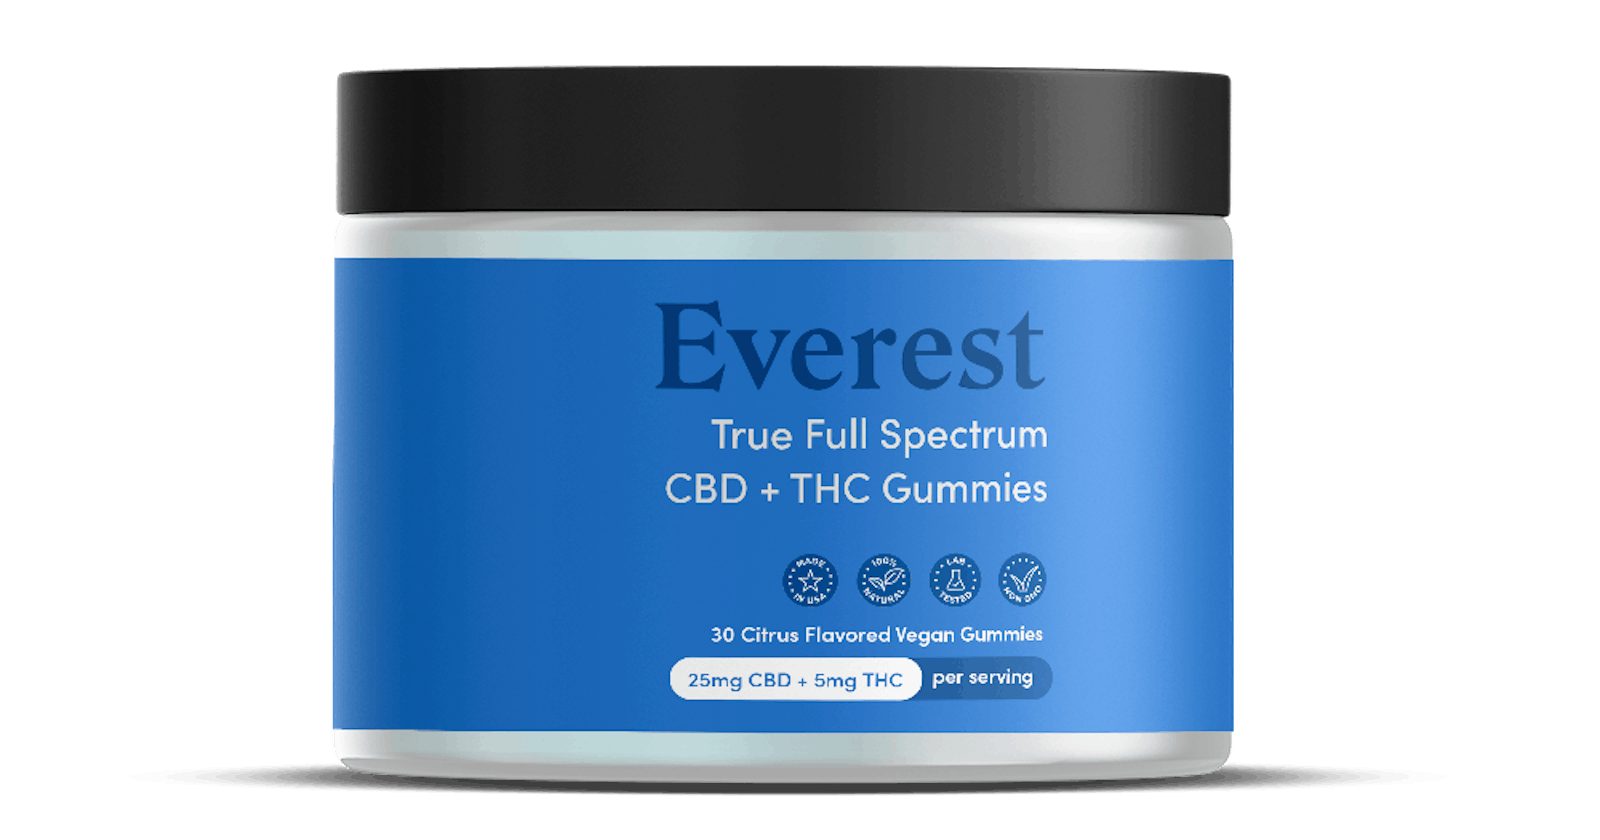 Everest Full Spectrum Gummies Original Product!